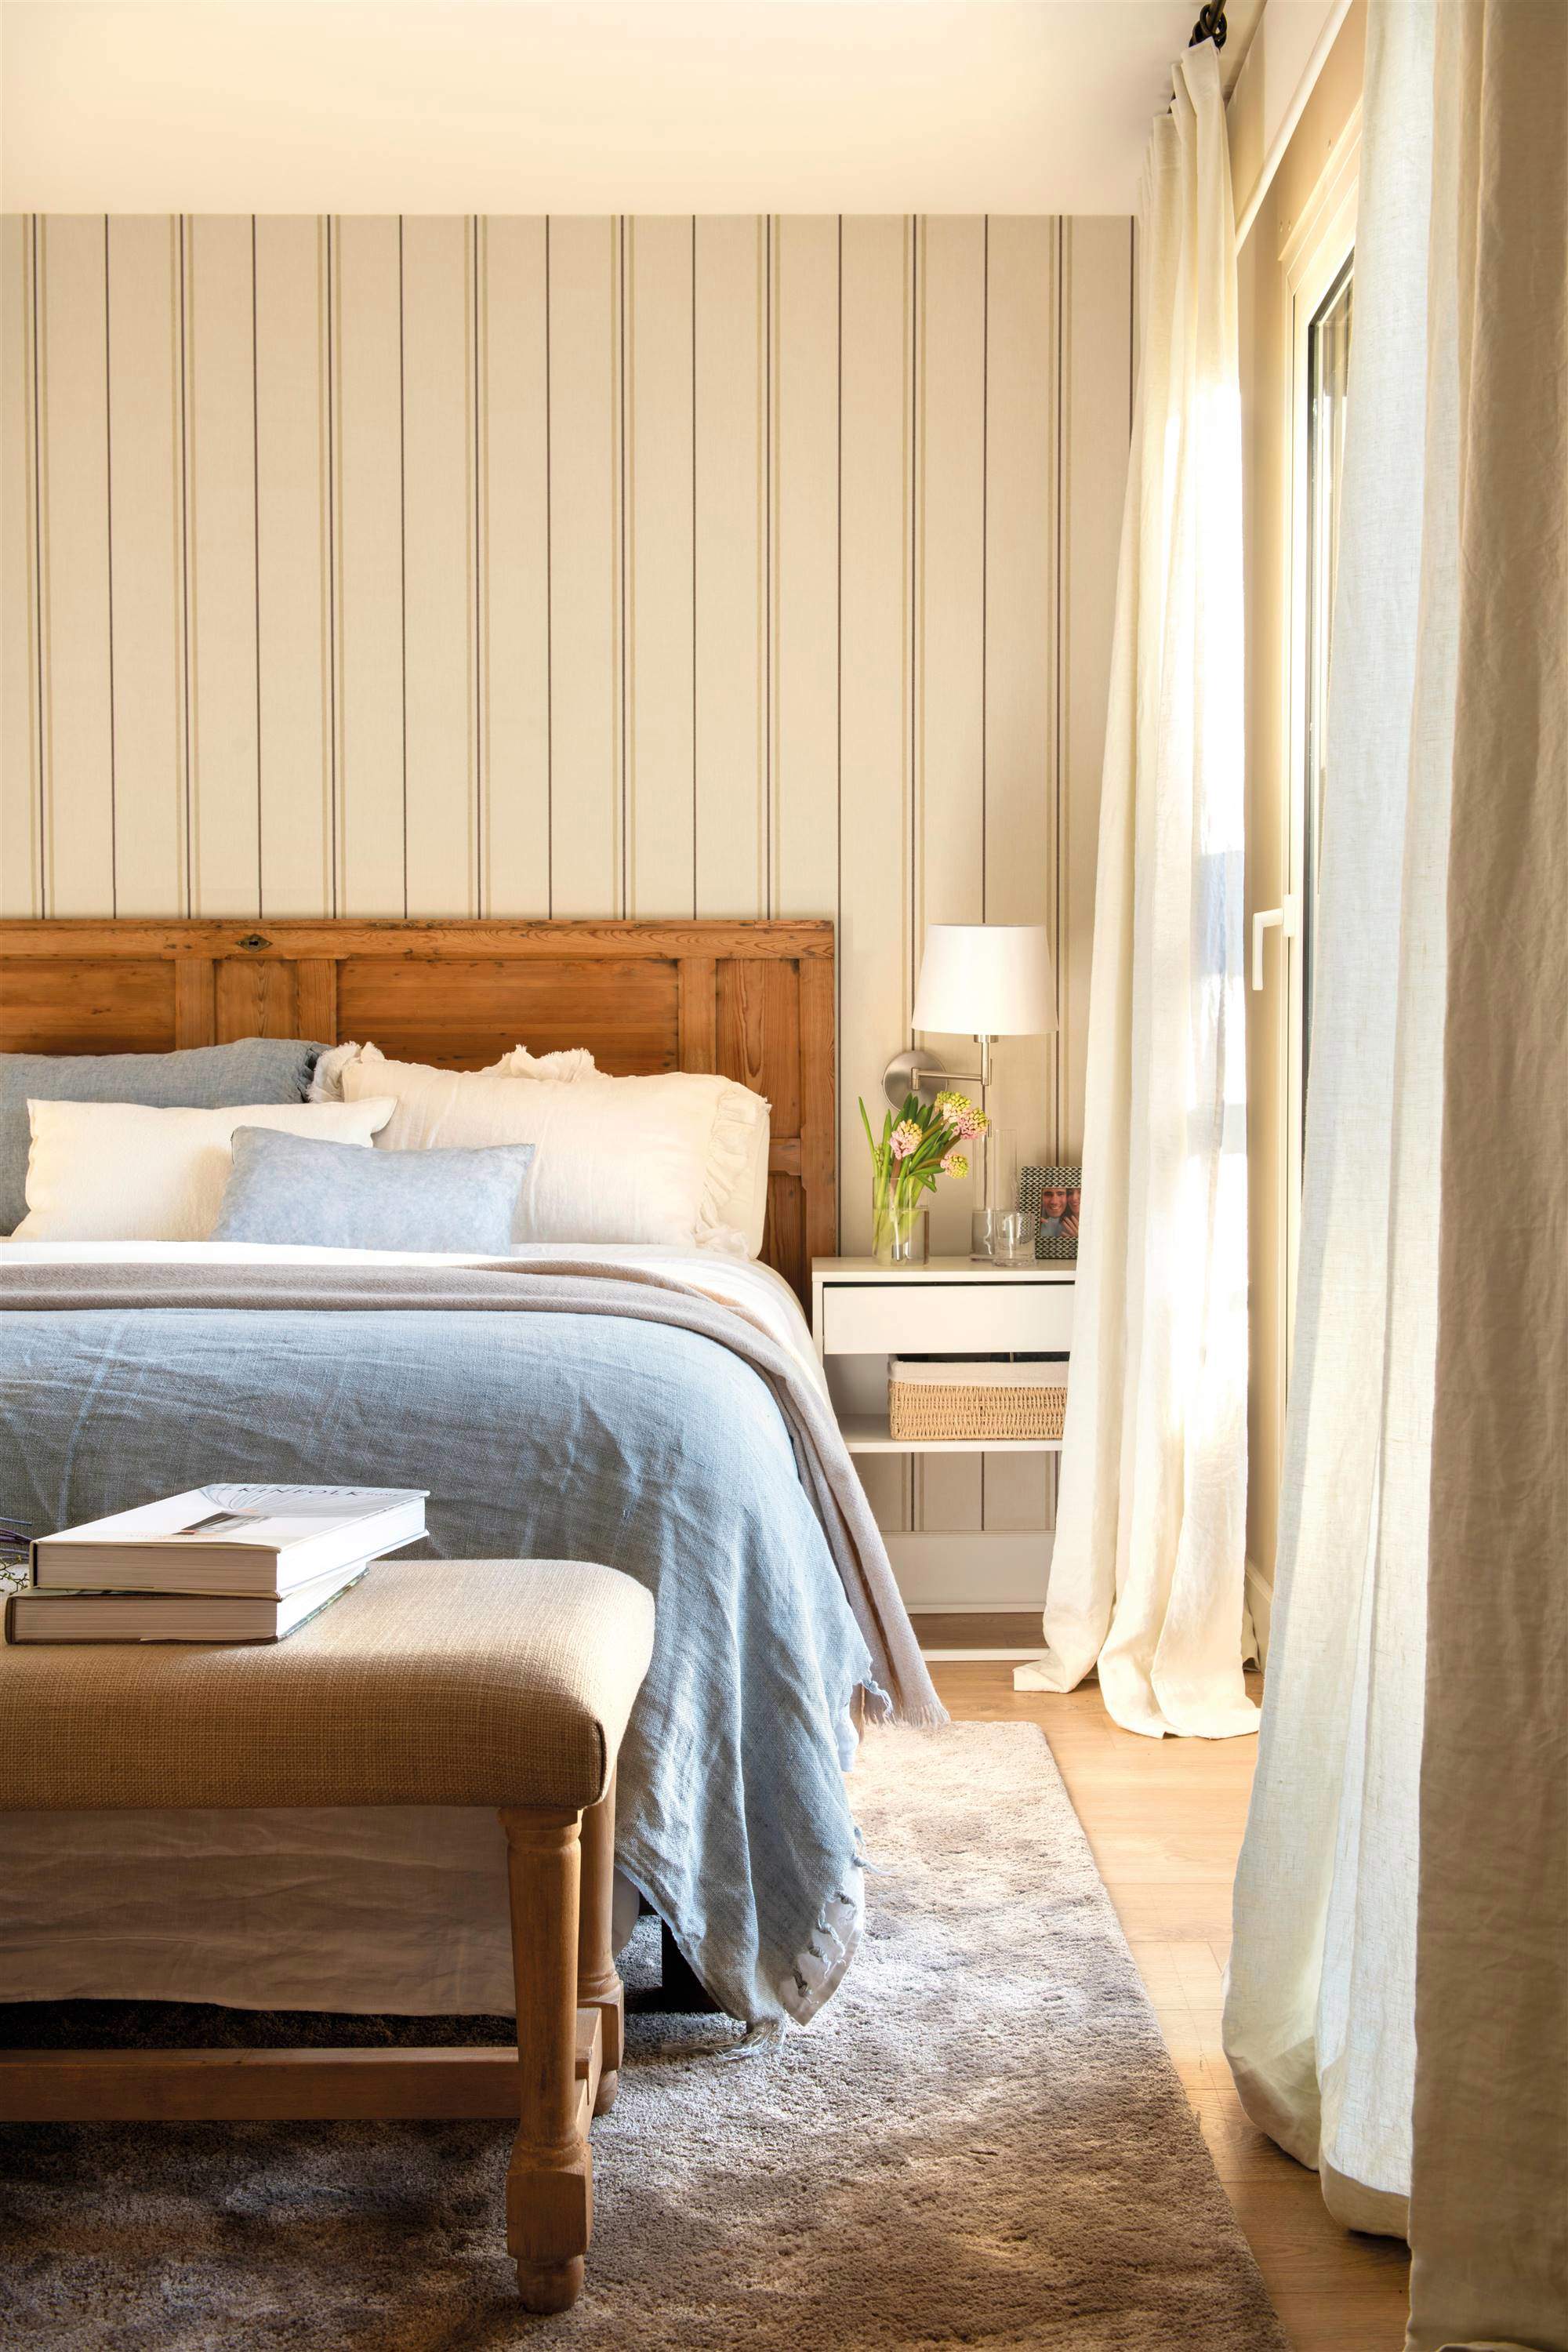 Dormitorio con cabecero de madera y papel pintado de rayas.